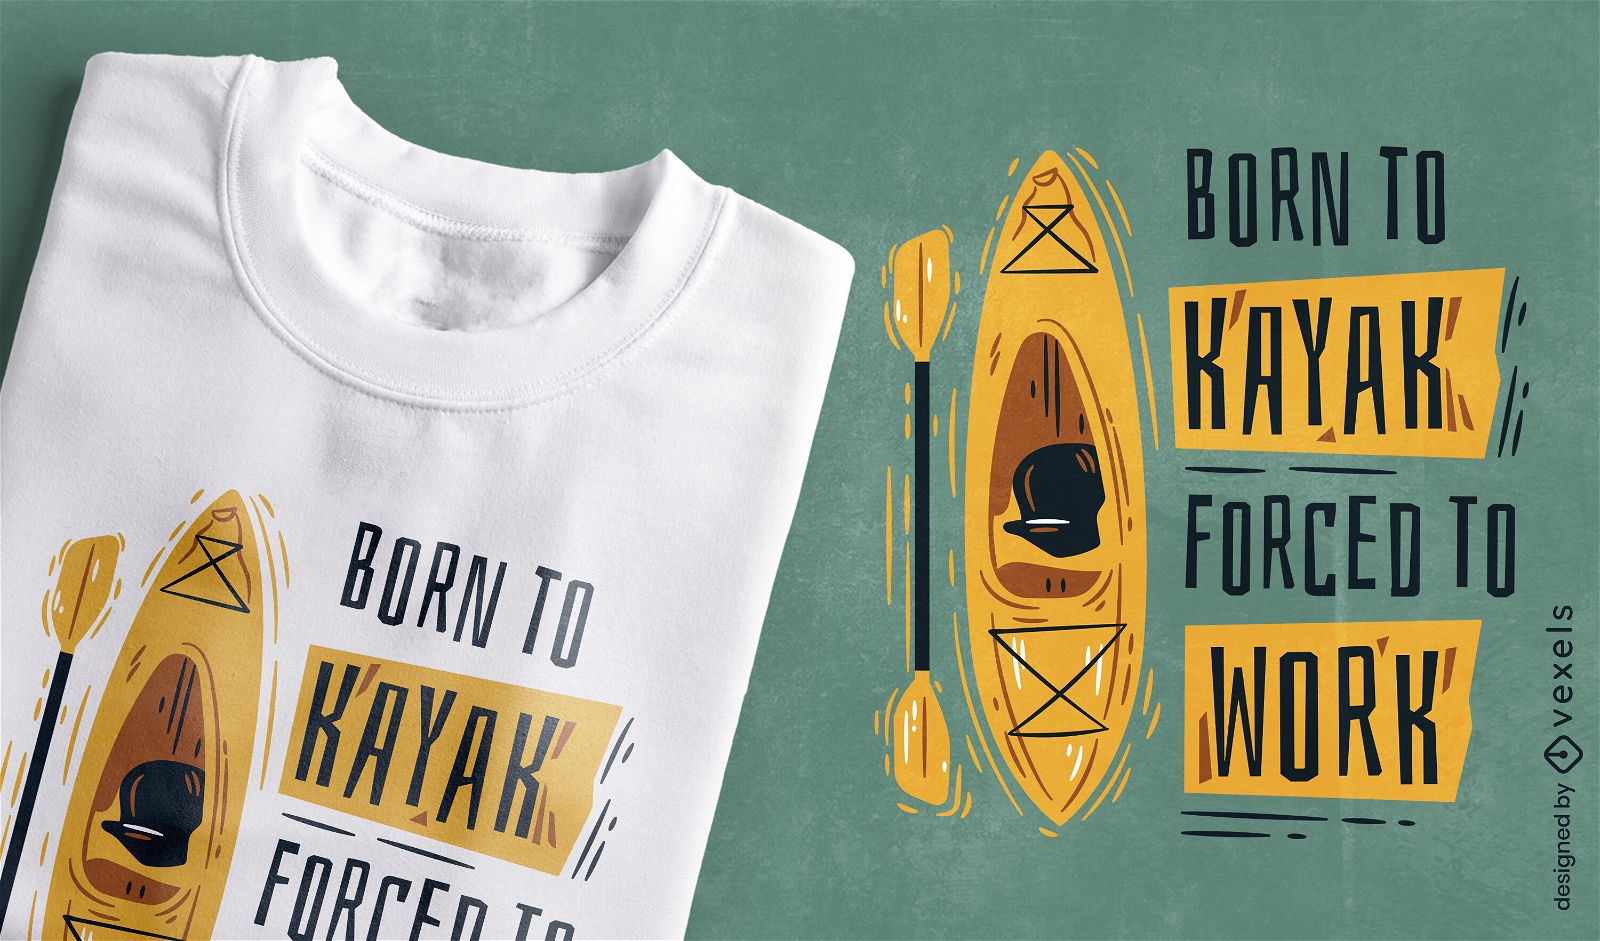 Born to kayak funny t-shirt design